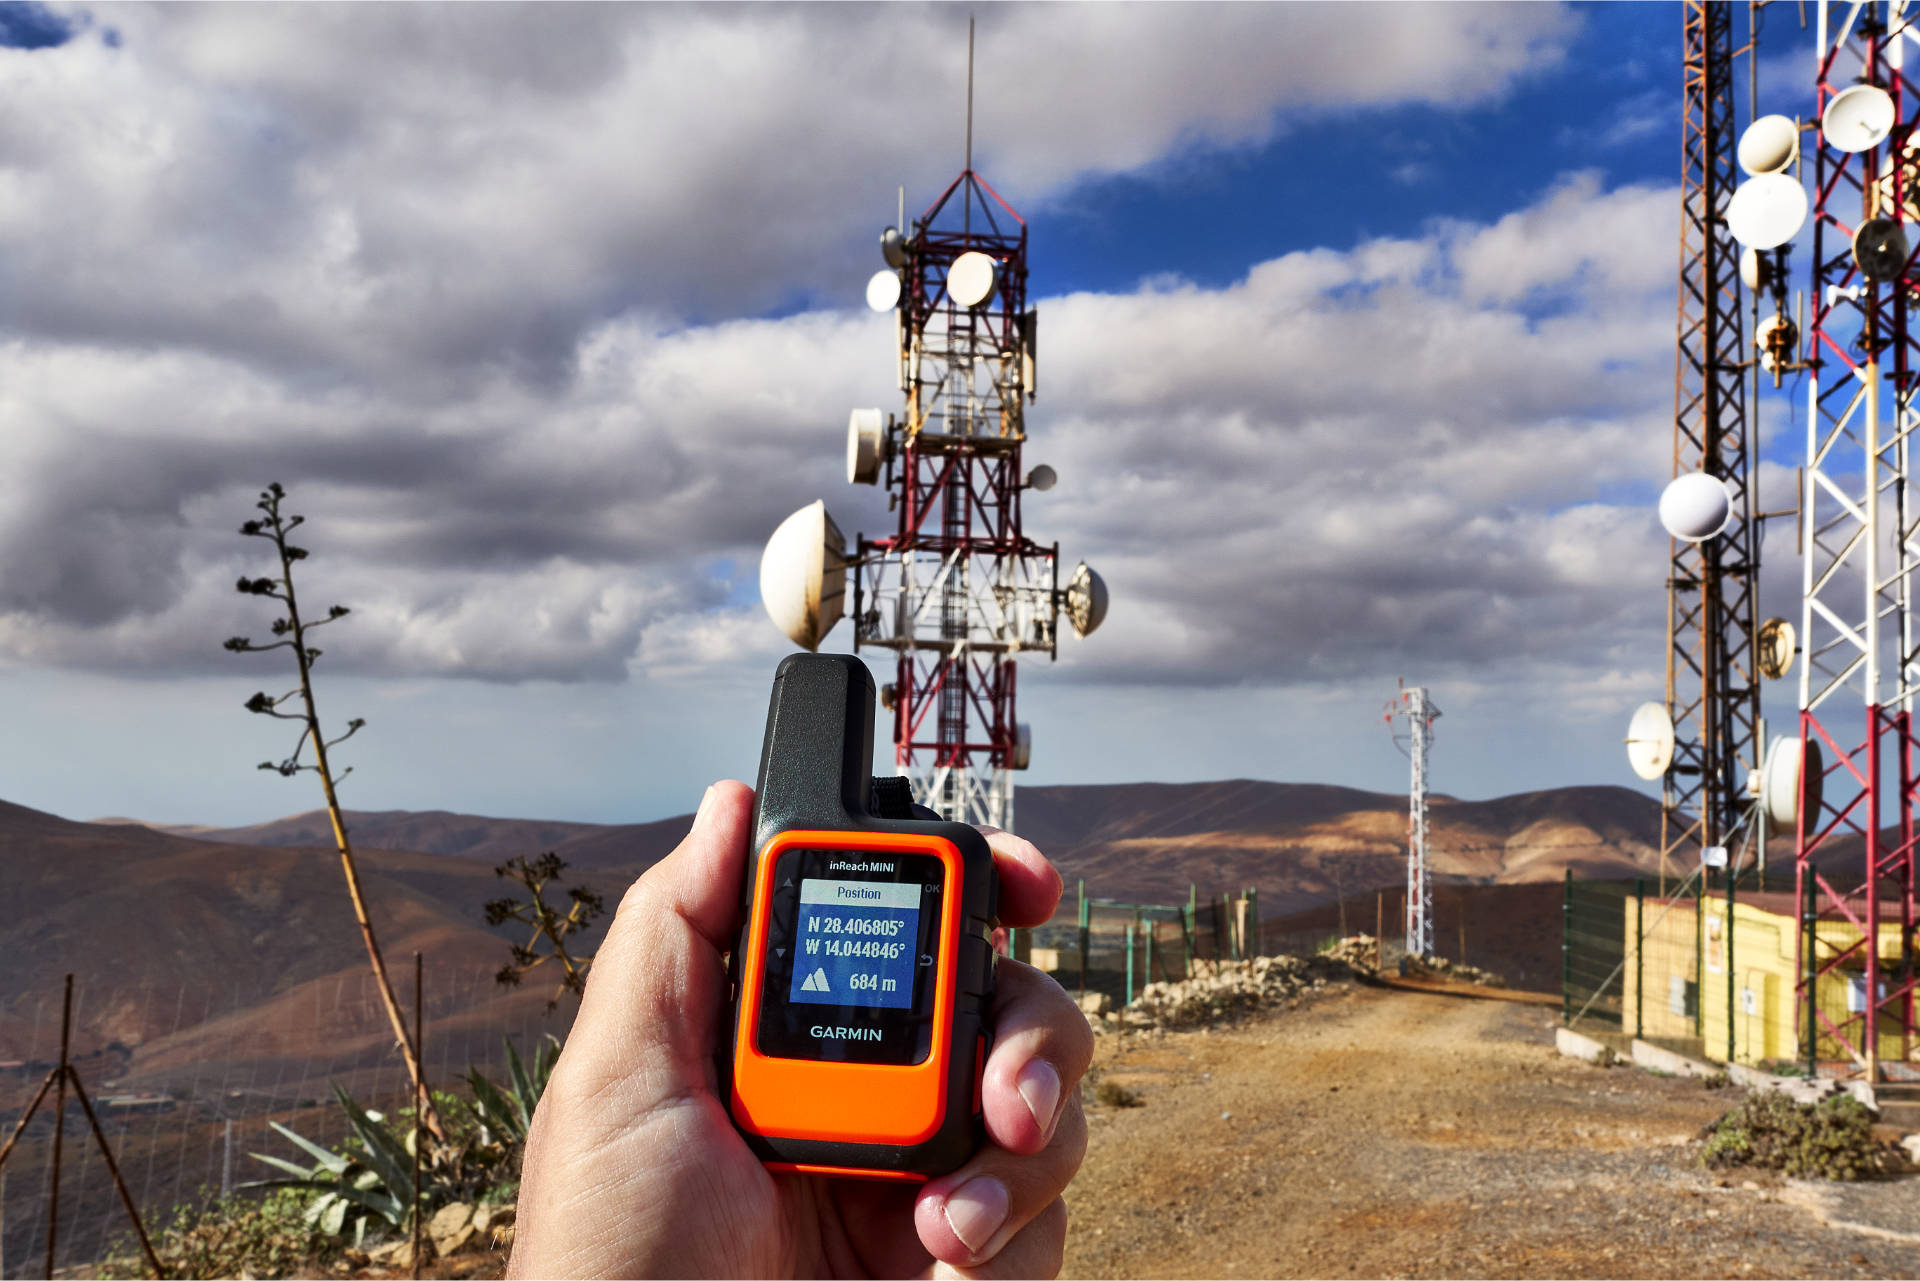 Am Morro Janana o Janichón (672 m) – auf Basis von GPS + GLONASS, WGS 84 wird eine Höhen von 684 m ermittelt.